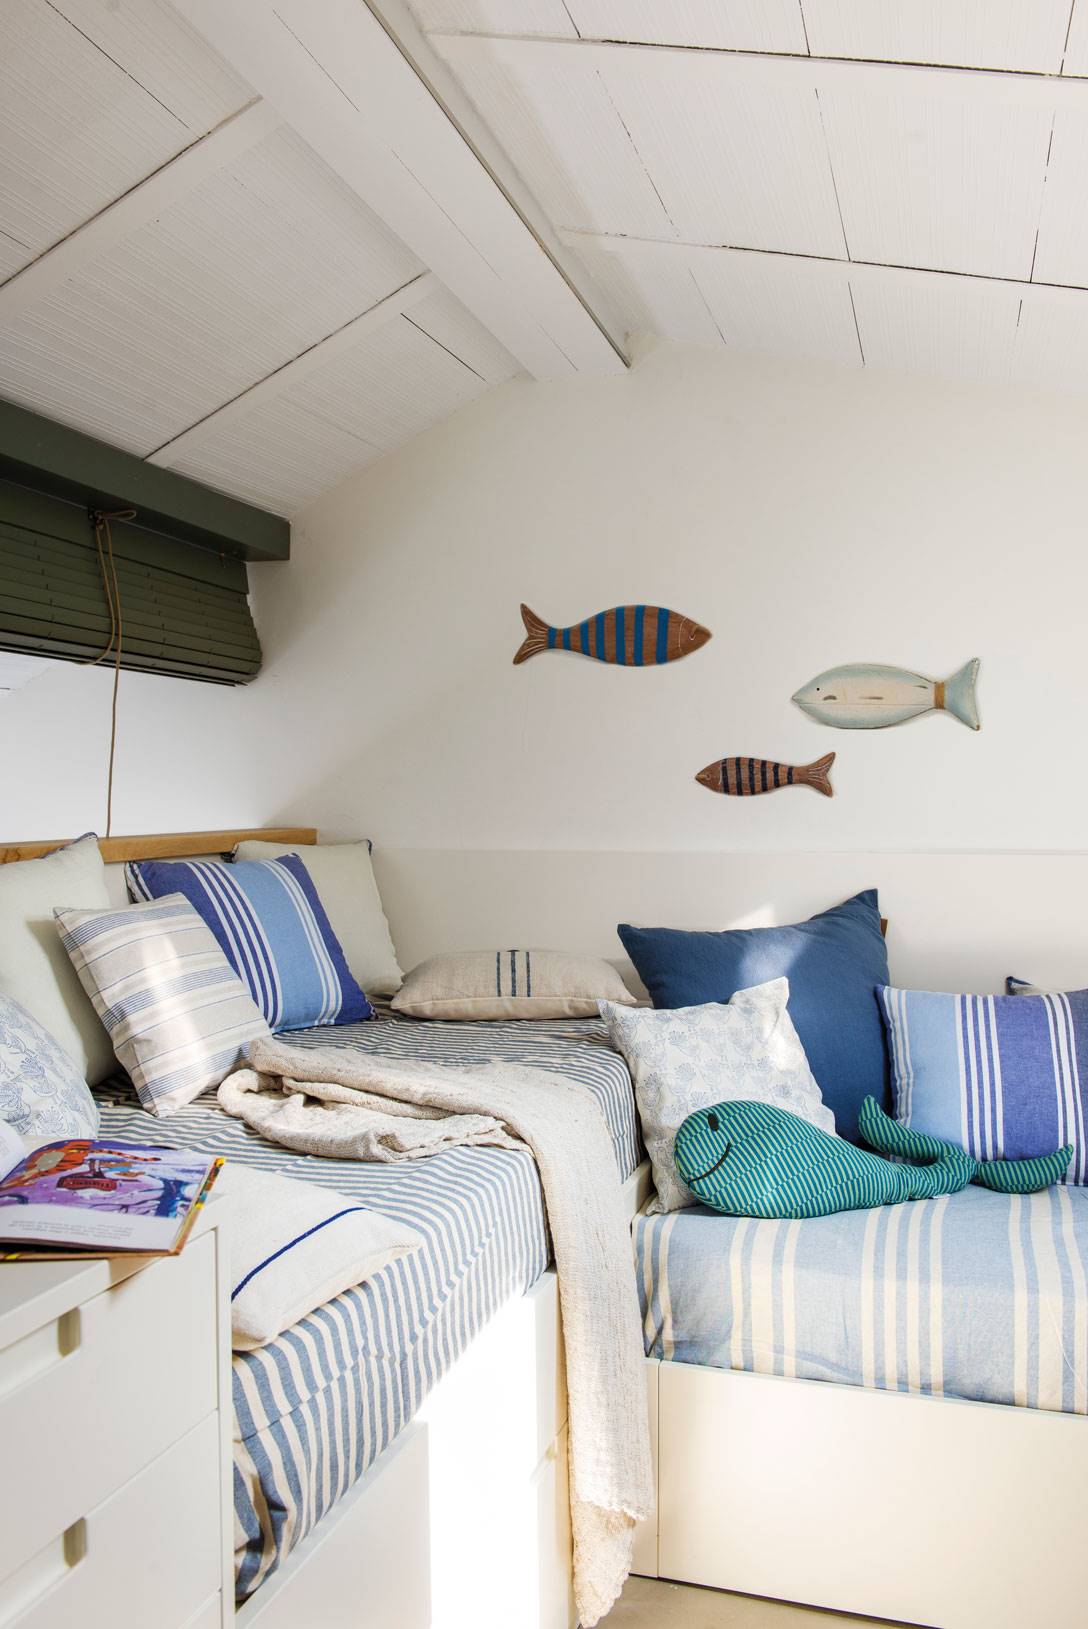 Dormitorio marinero en blanco y azul con dos camas y peces decorativos en la pared-507546